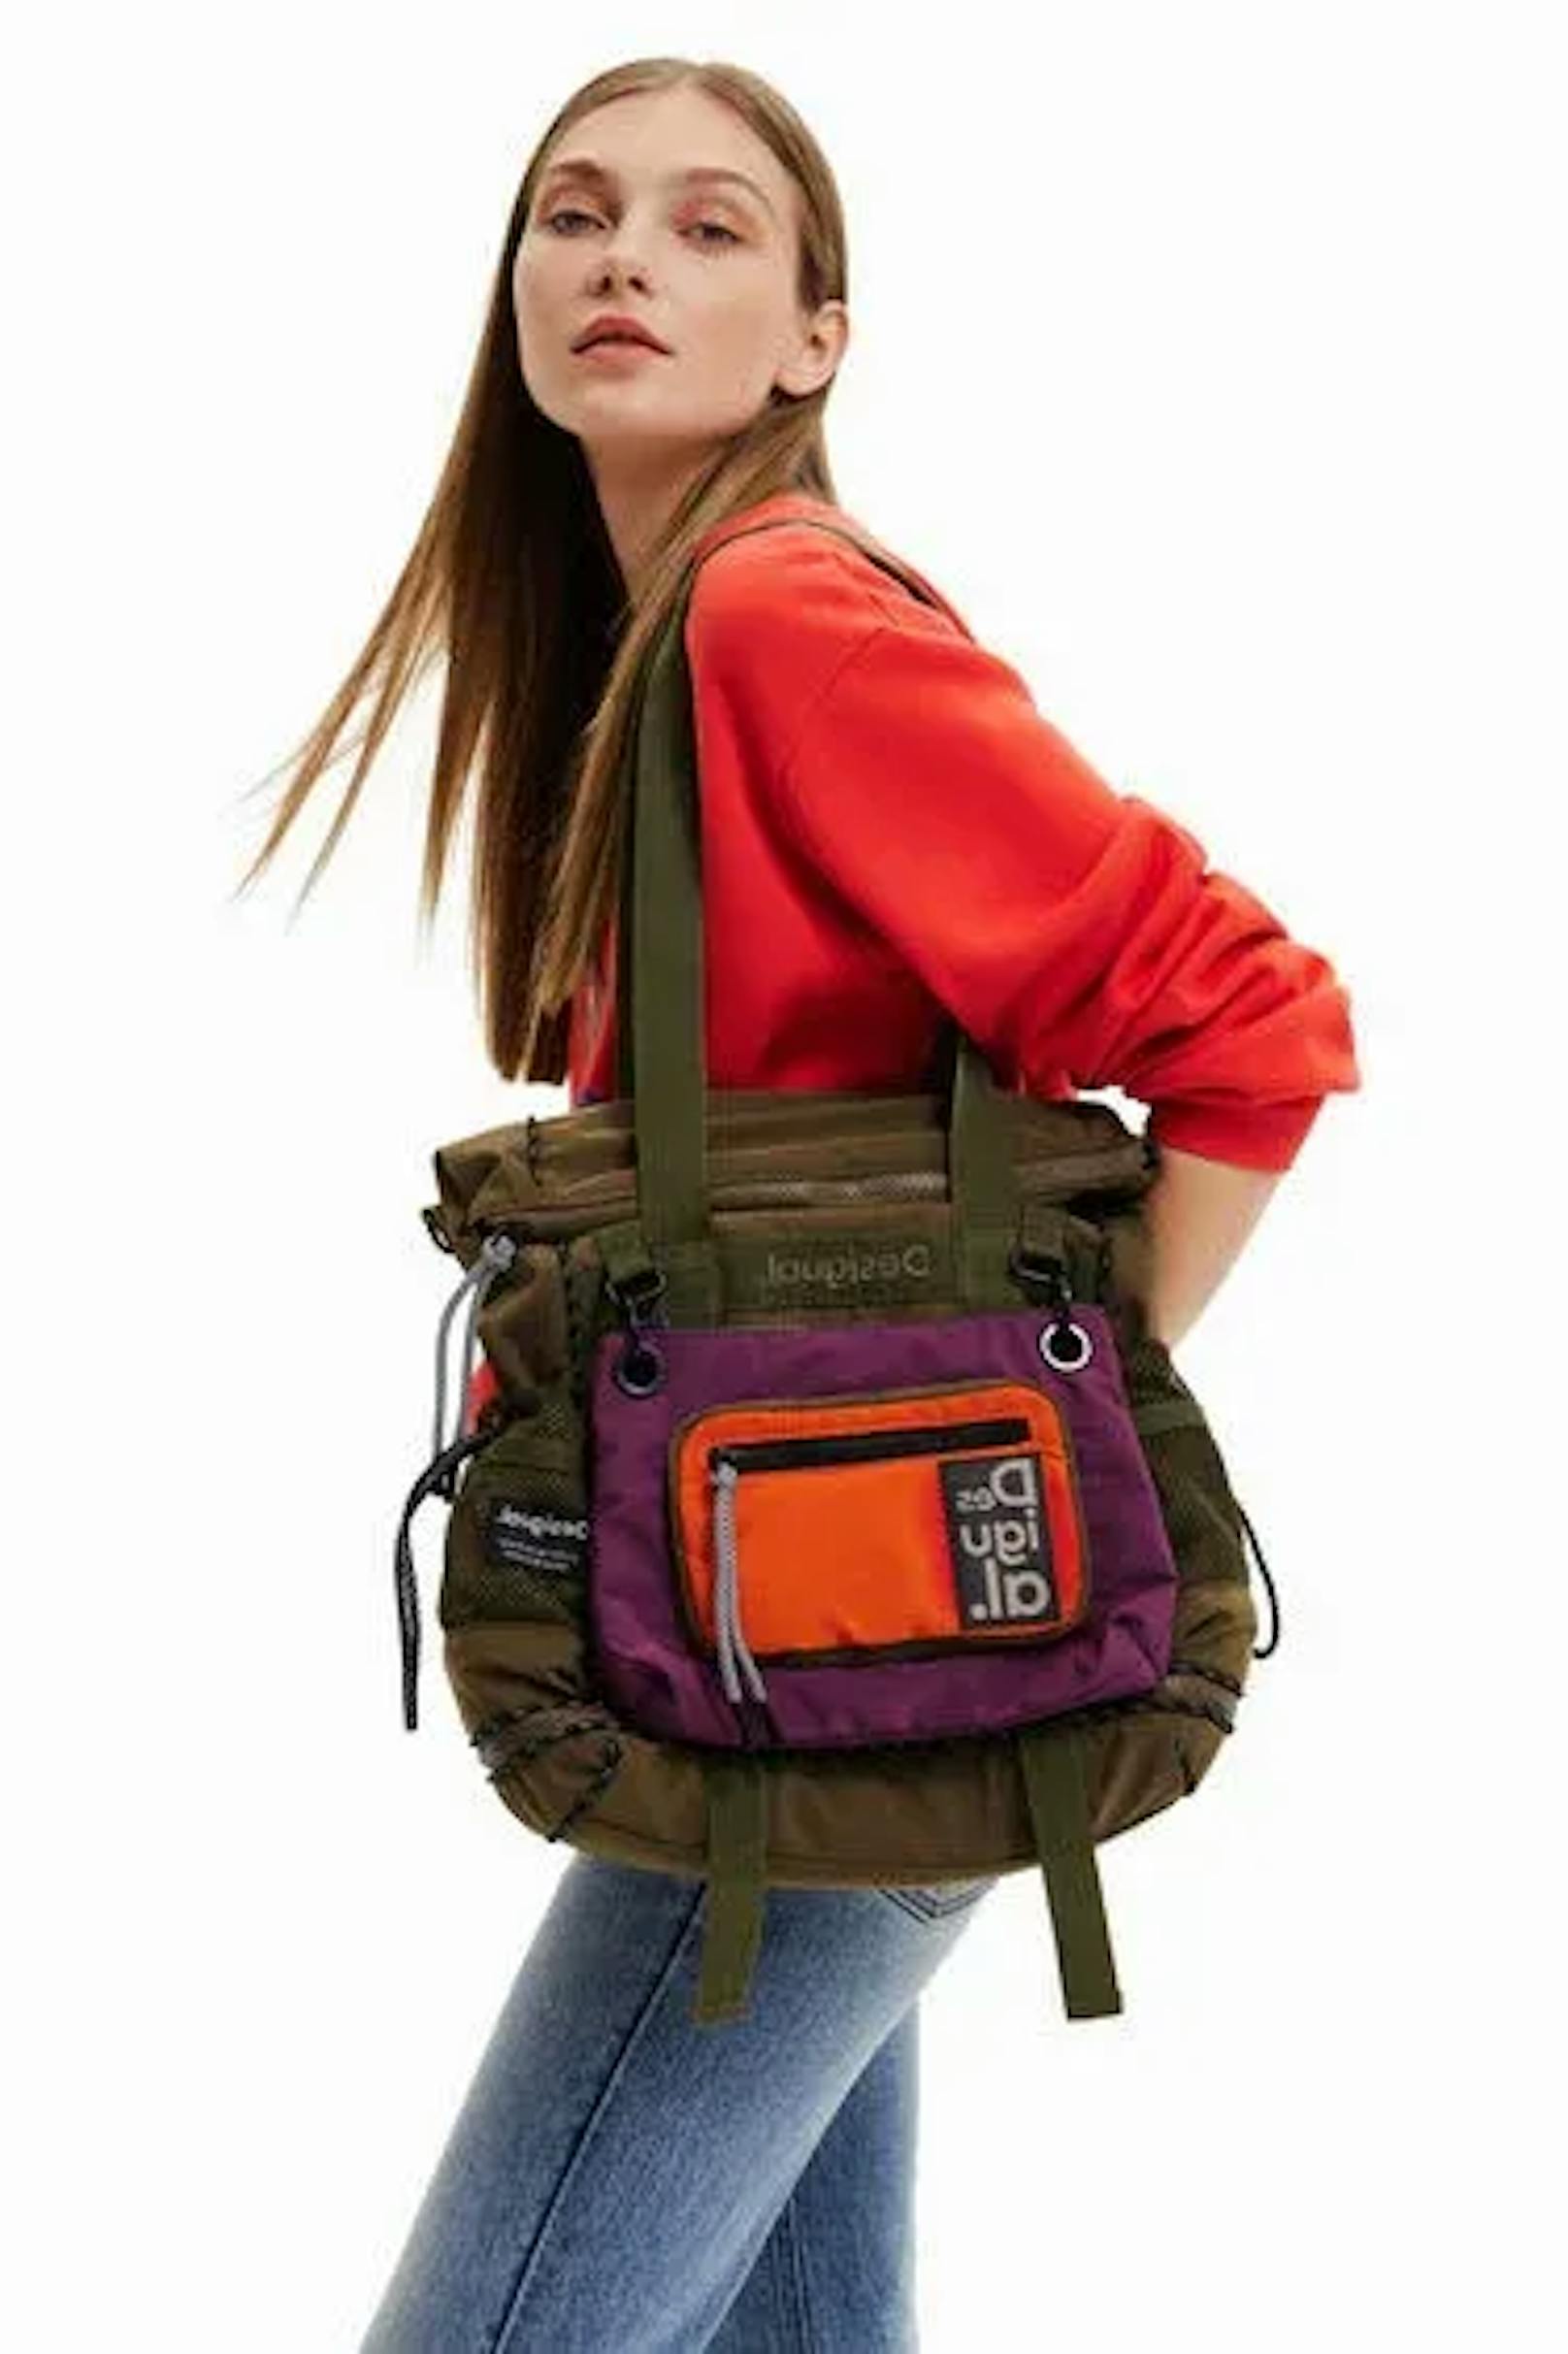 Wenn du dich nicht zwischen einem Rucksack oder einer Handtasche entscheiden kannst, wäre die einfachste Lösung, alle beide zu nehmen. Der 2-in-1-Rucksack bietet dir Vielfältigkeit und Style an.